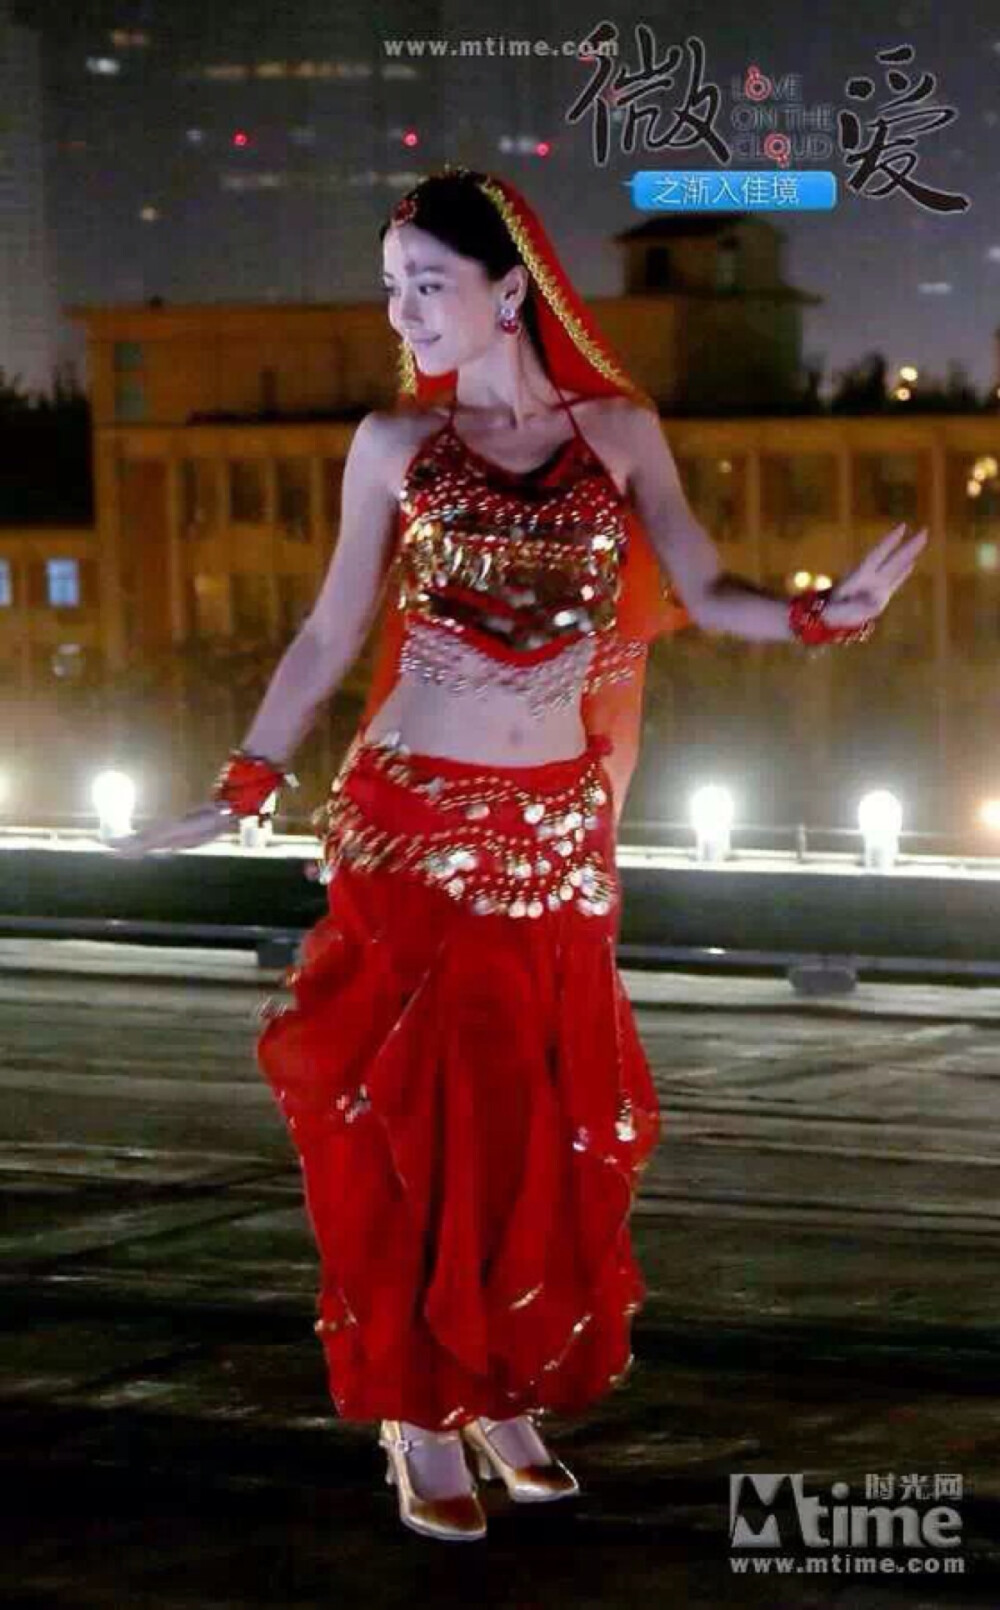 电影《微爱》中Angelababy也跳起了印度肚皮舞